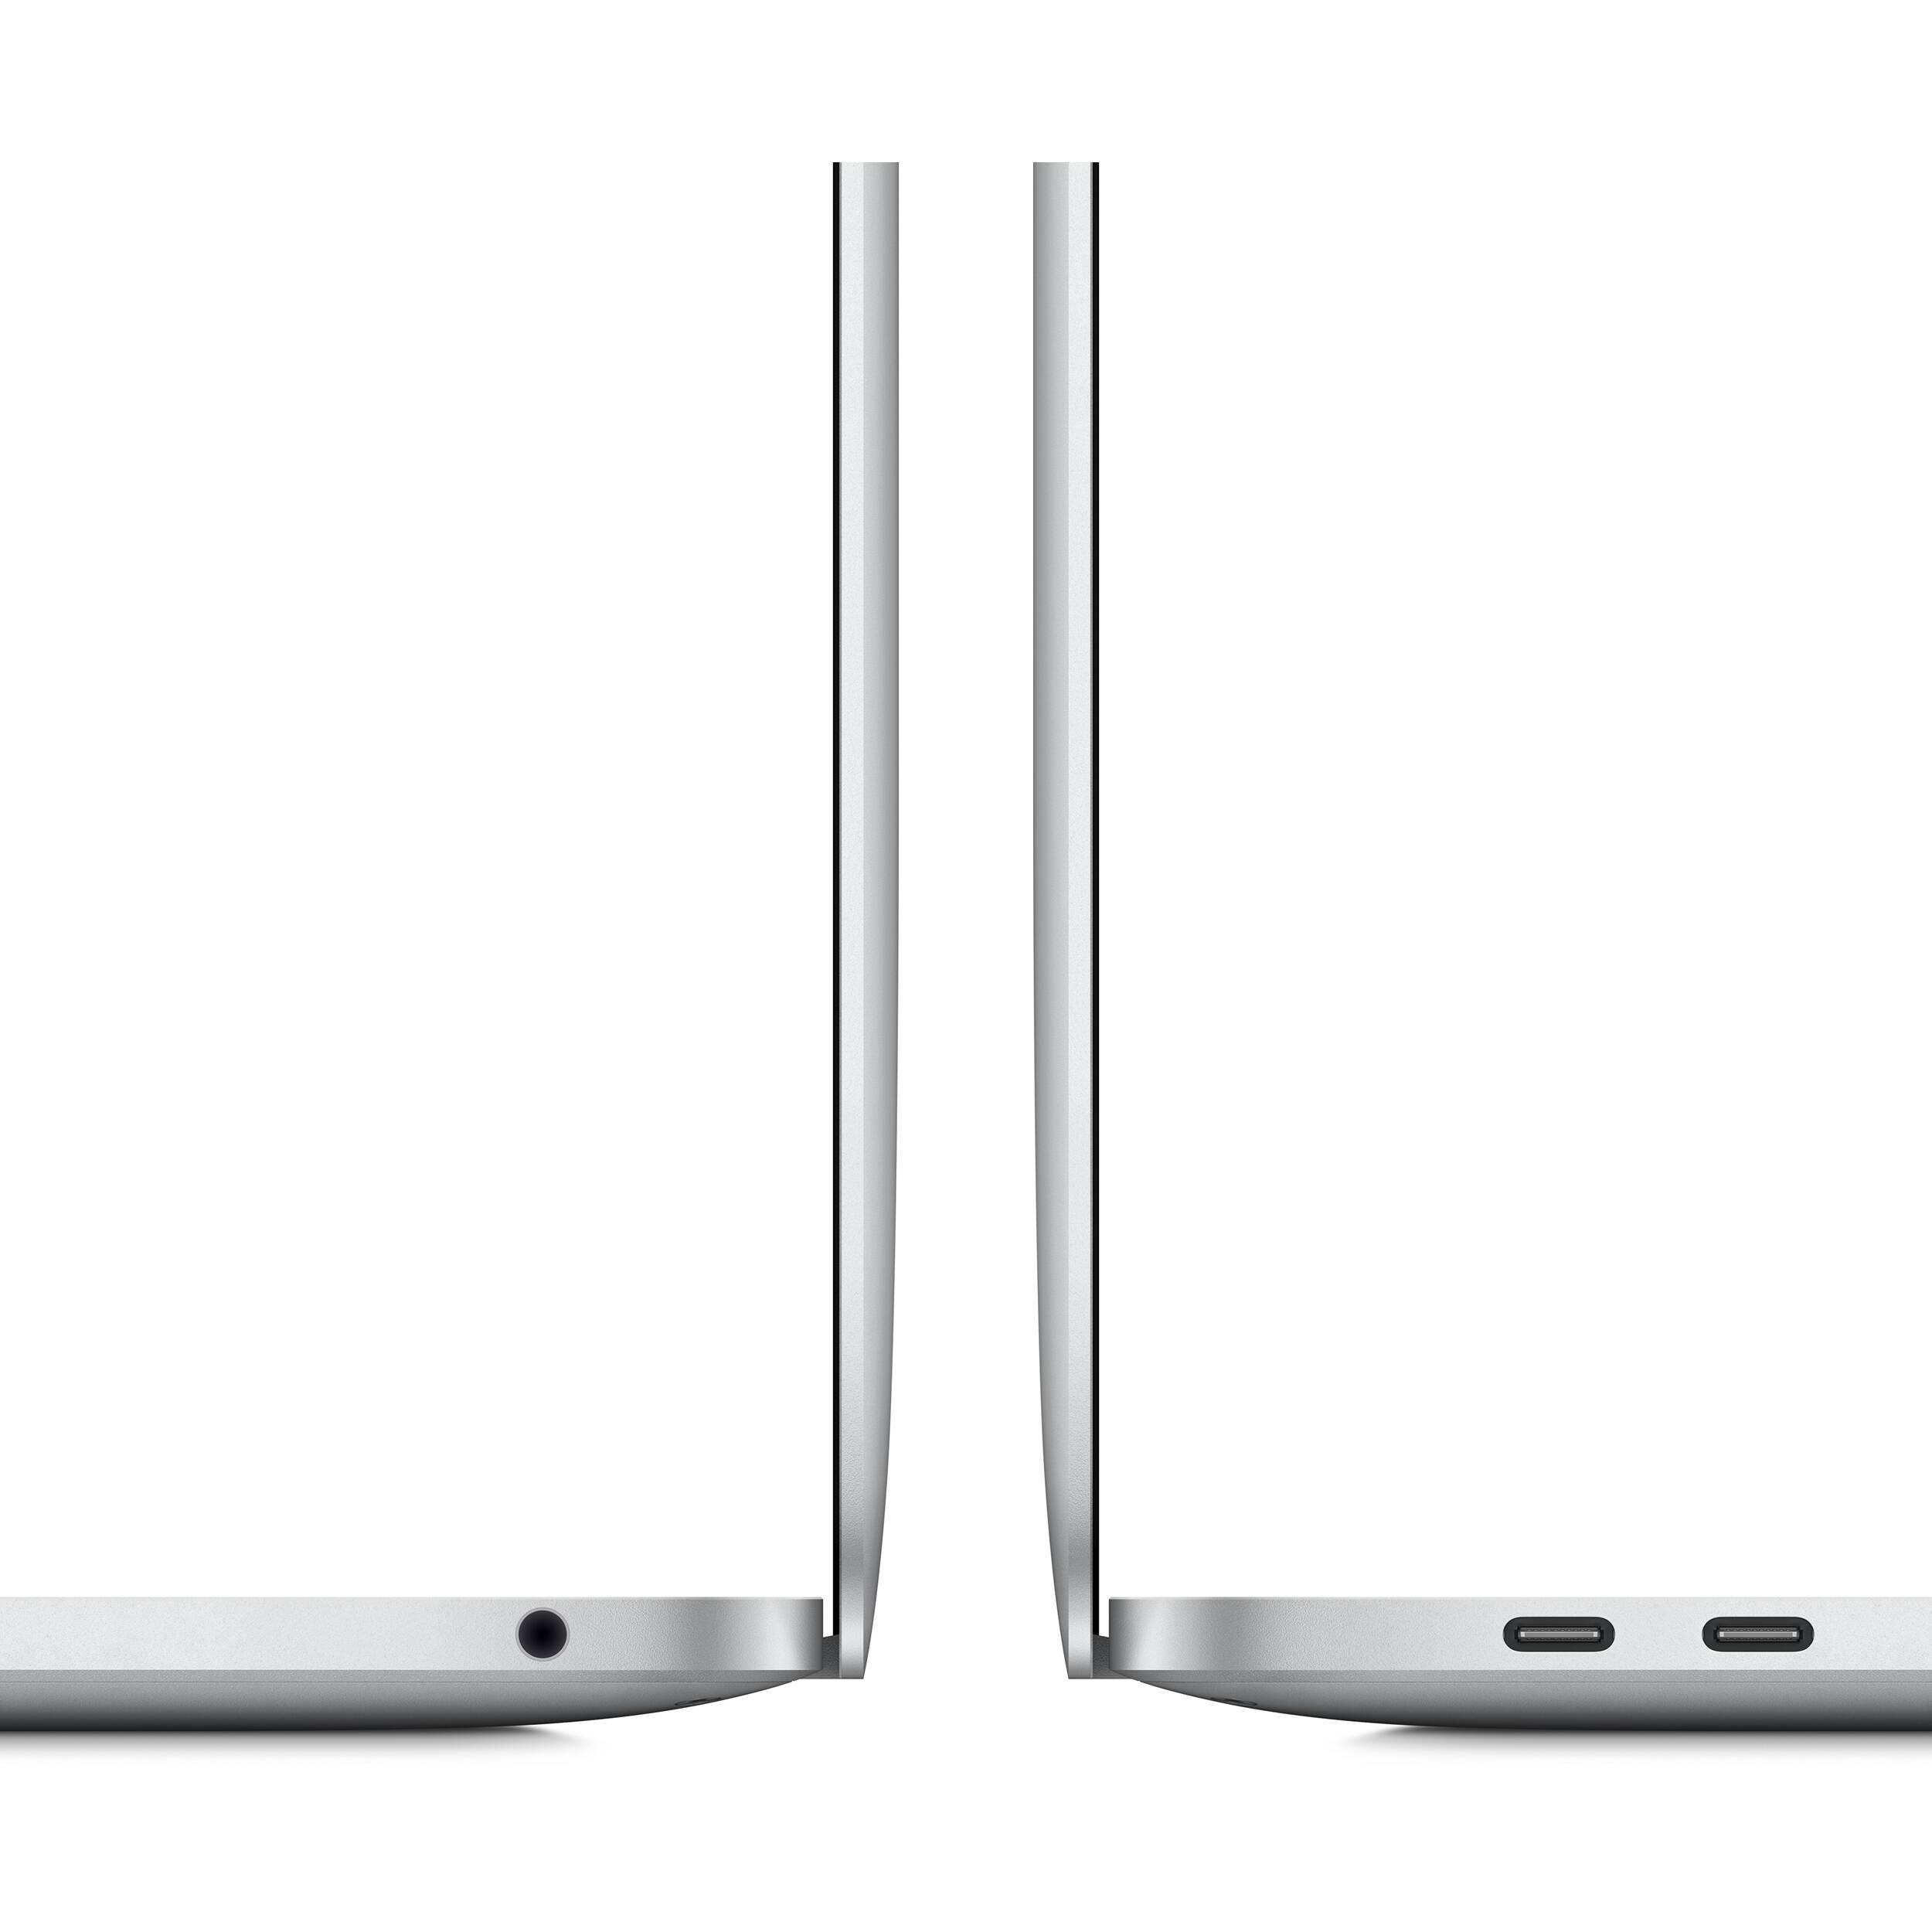 لپ تاپ 13 اینچی اپل مدل MacBook Pro MYDA2 2020 همراه با تاچ بار